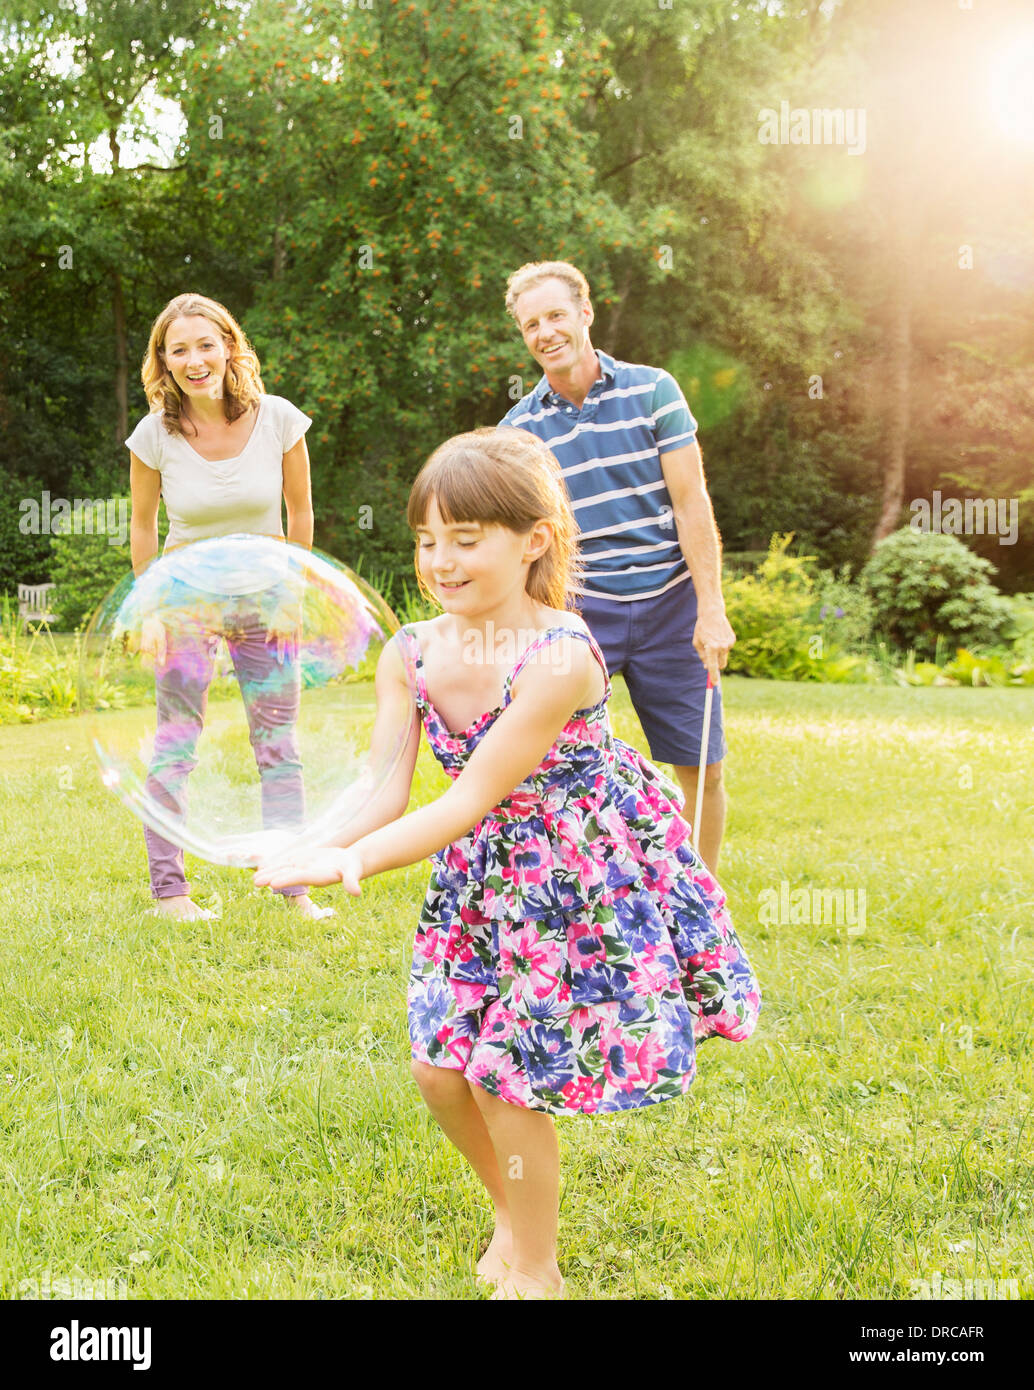 Familie spielen mit Luftblasen im Hinterhof Stockfoto